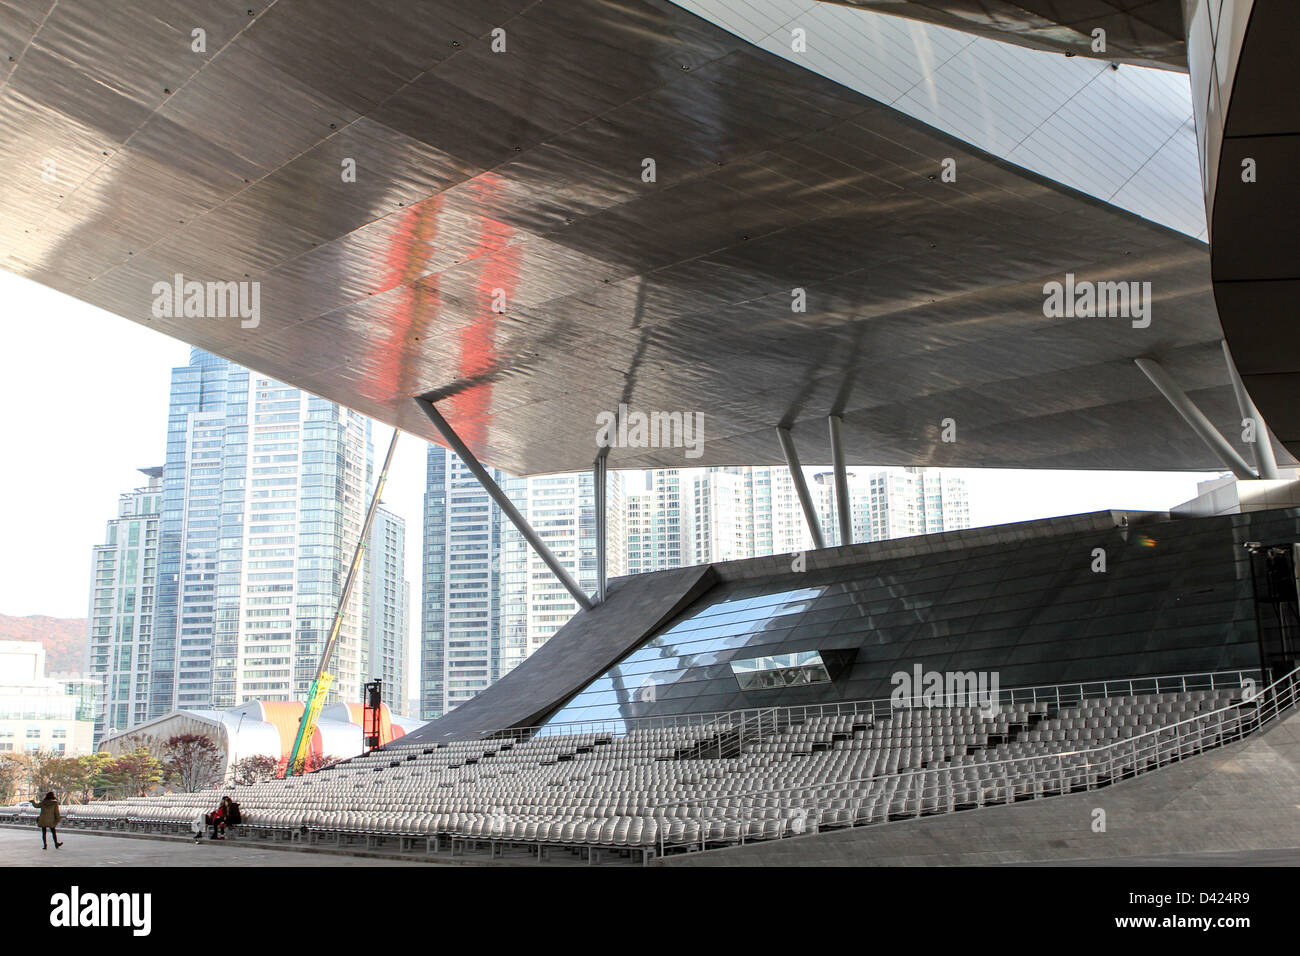 Busan Cinema Center called Dureraum - modern architecture in Asia Stock Photo